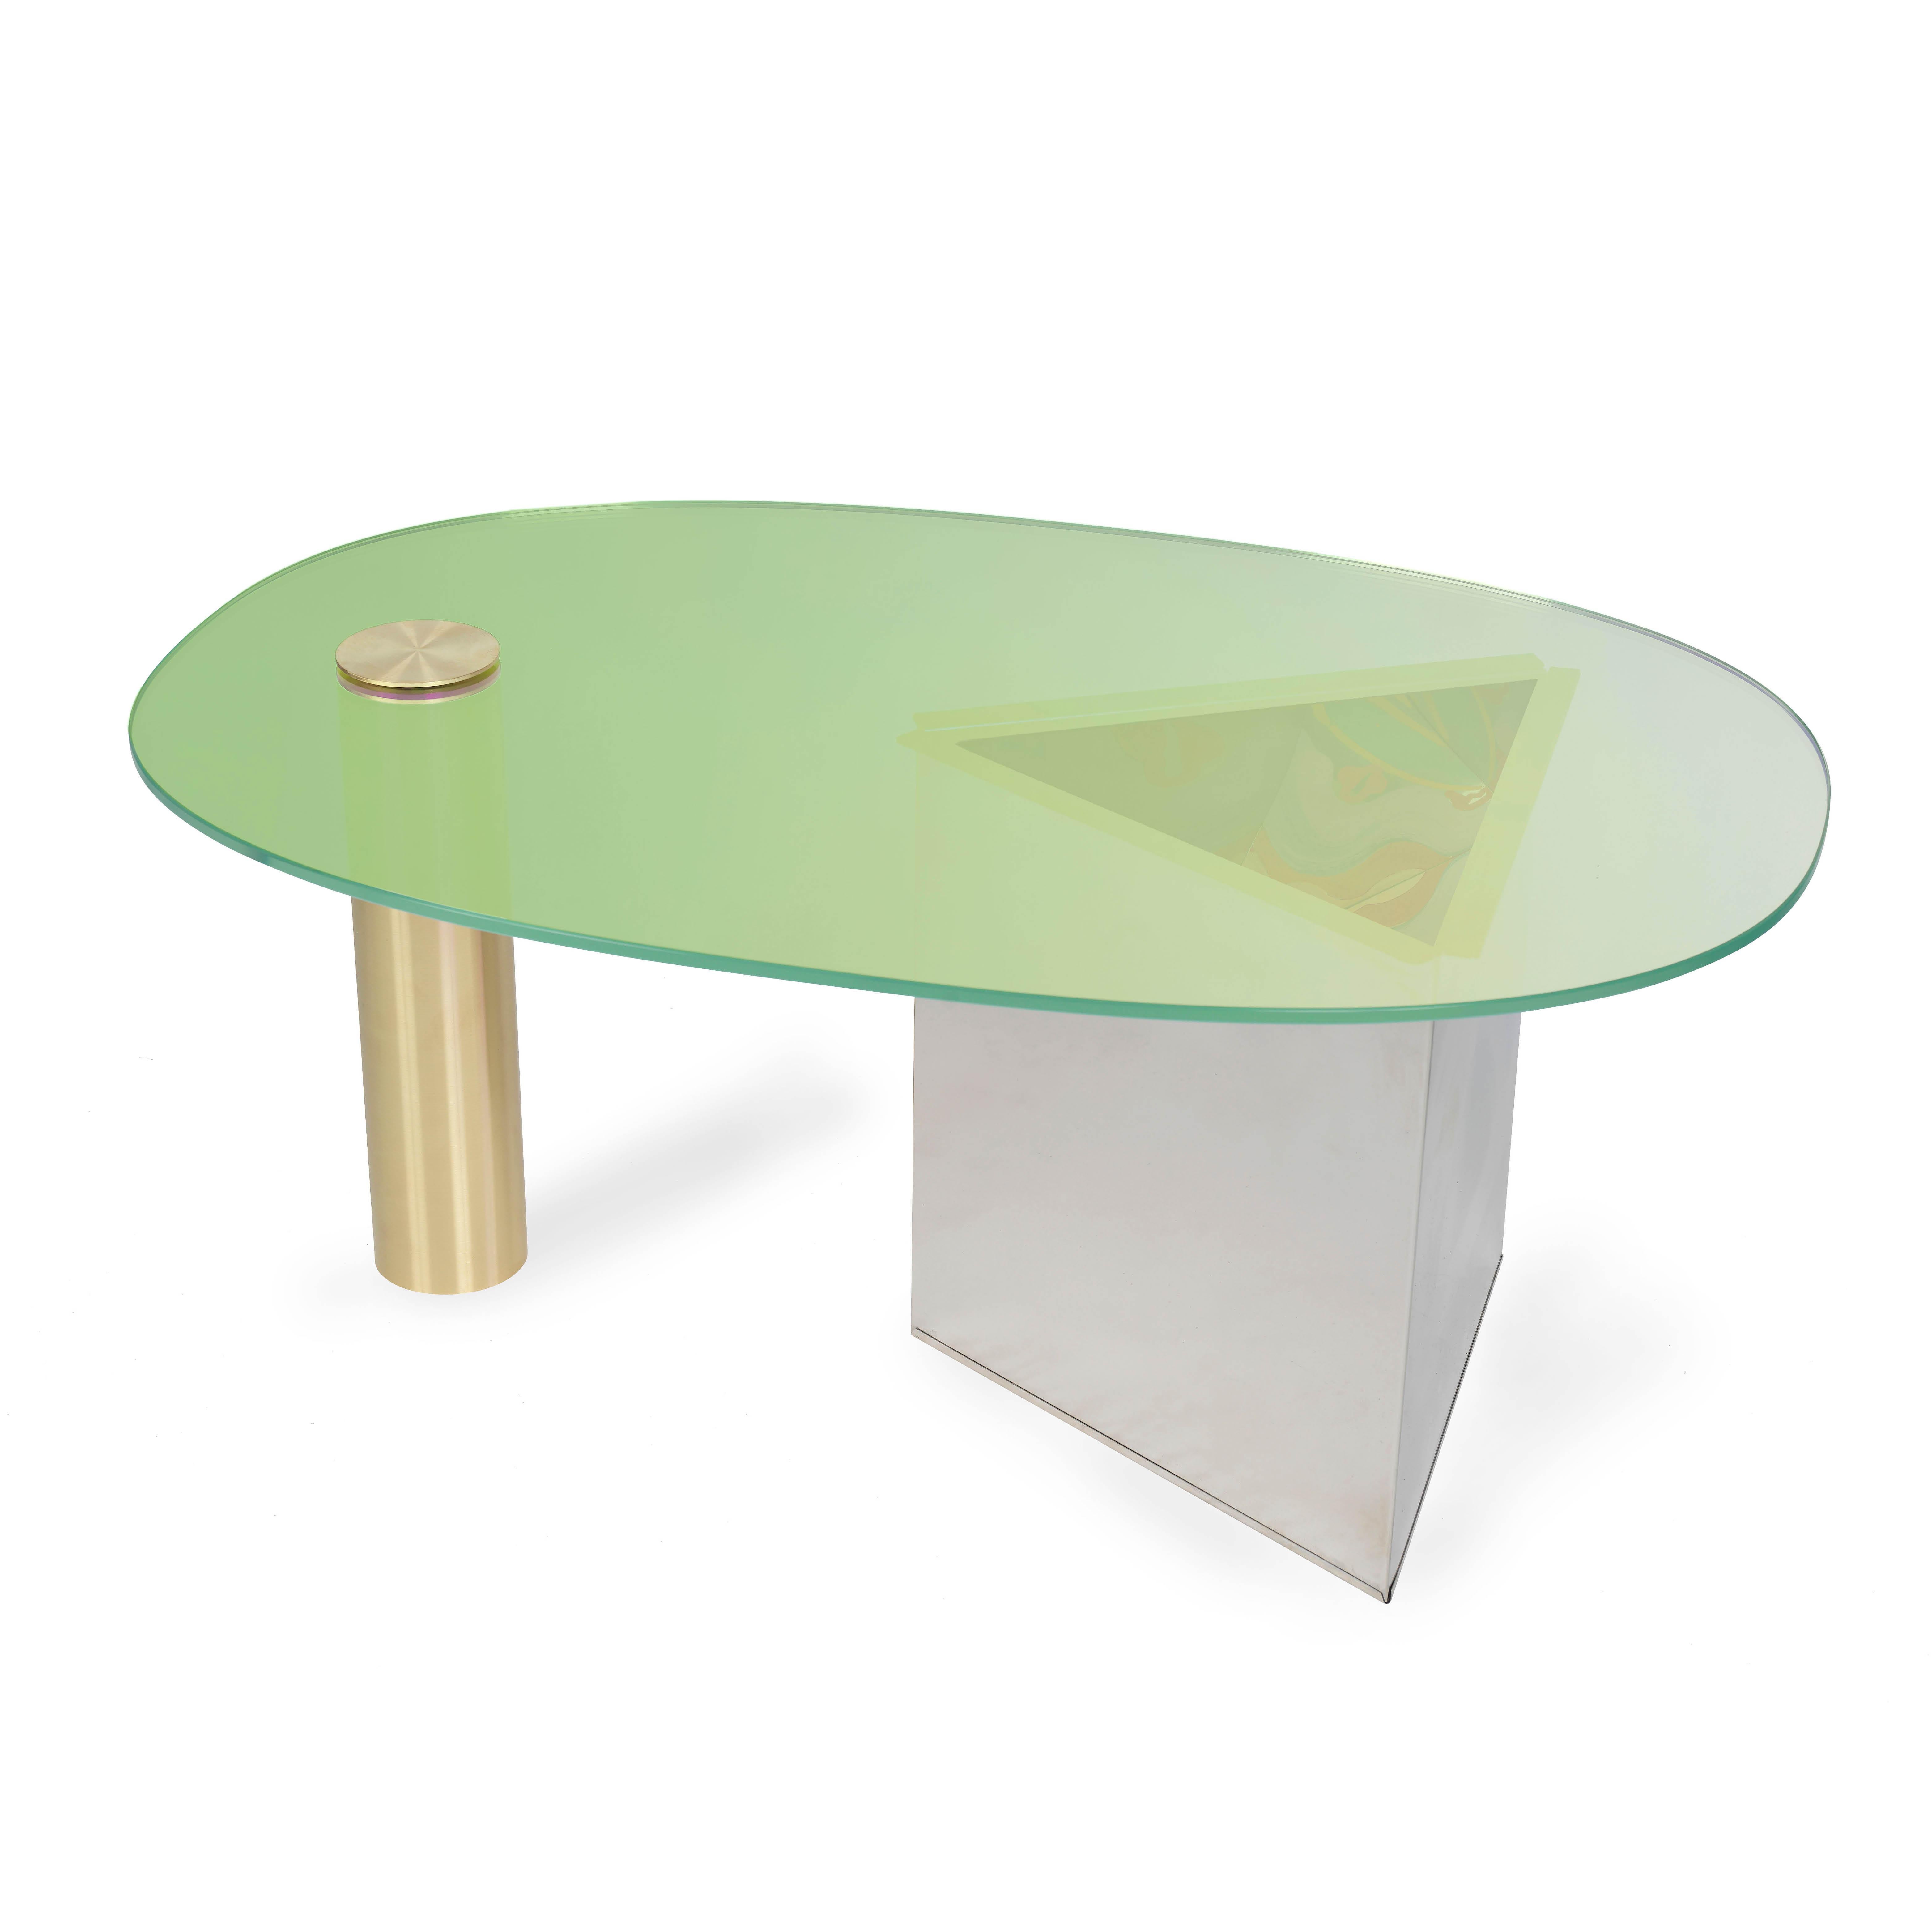 Table basse verte Ettore par Åsa Jungnelius
Dimensions : 43 x 67 x 100 cm : 43 x 67 x 100 cm
MATERIAL : Verre dichroïque, laiton, acier inoxydable. 

Chaque table est peinte individuellement par l'artiste. Edition limitée

Åsa Jungnelius est une